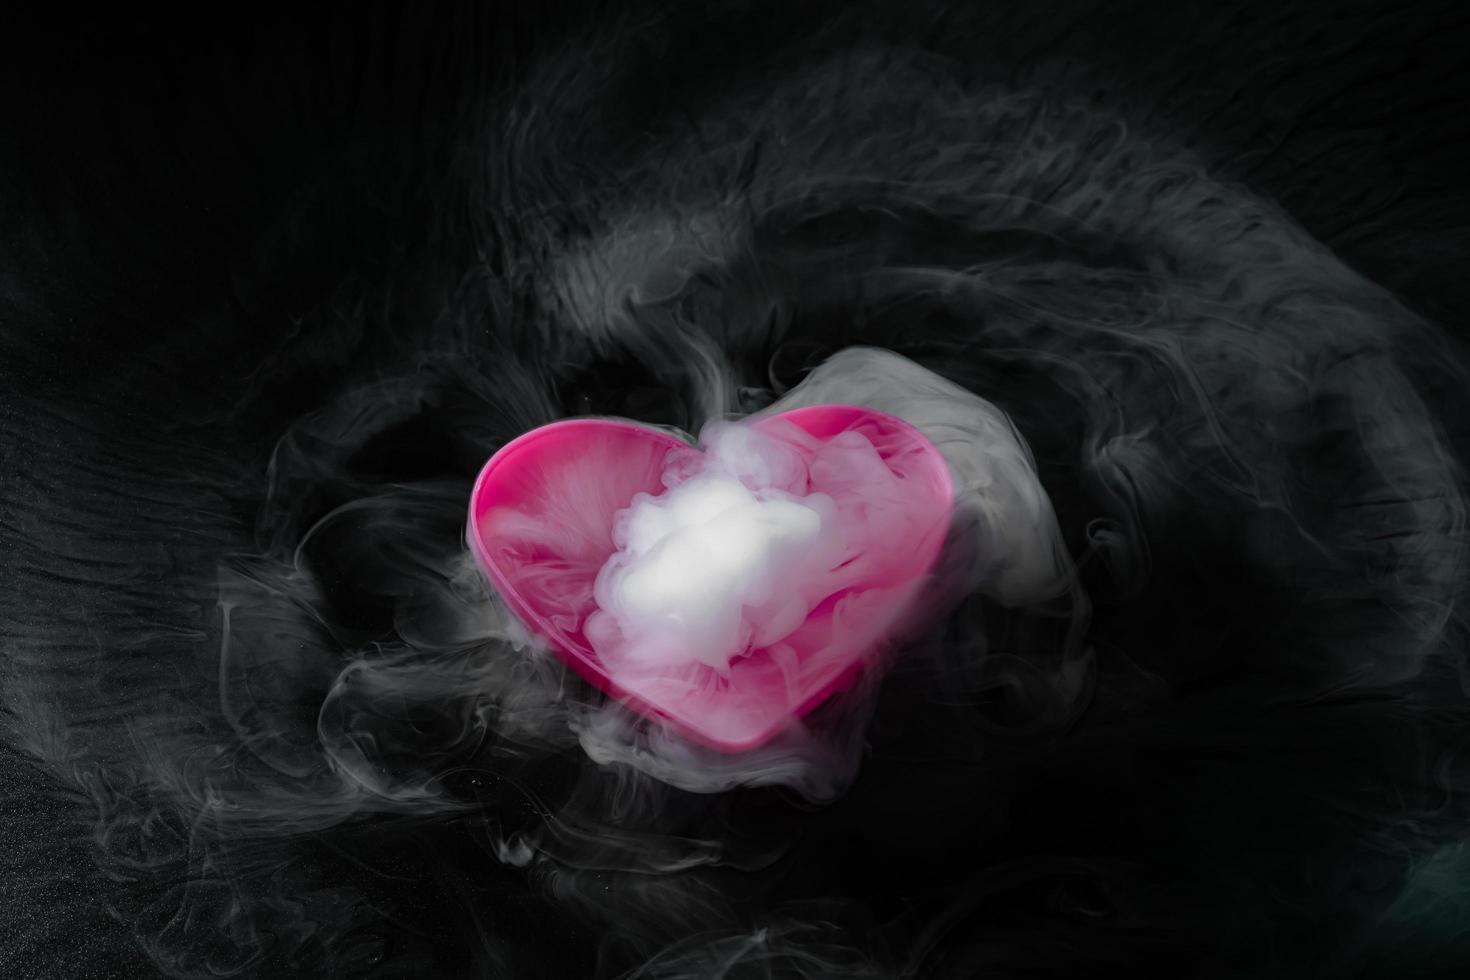 fumée de glace carbonique avec tasse en forme de coeur rose isolée sur fond noir photo